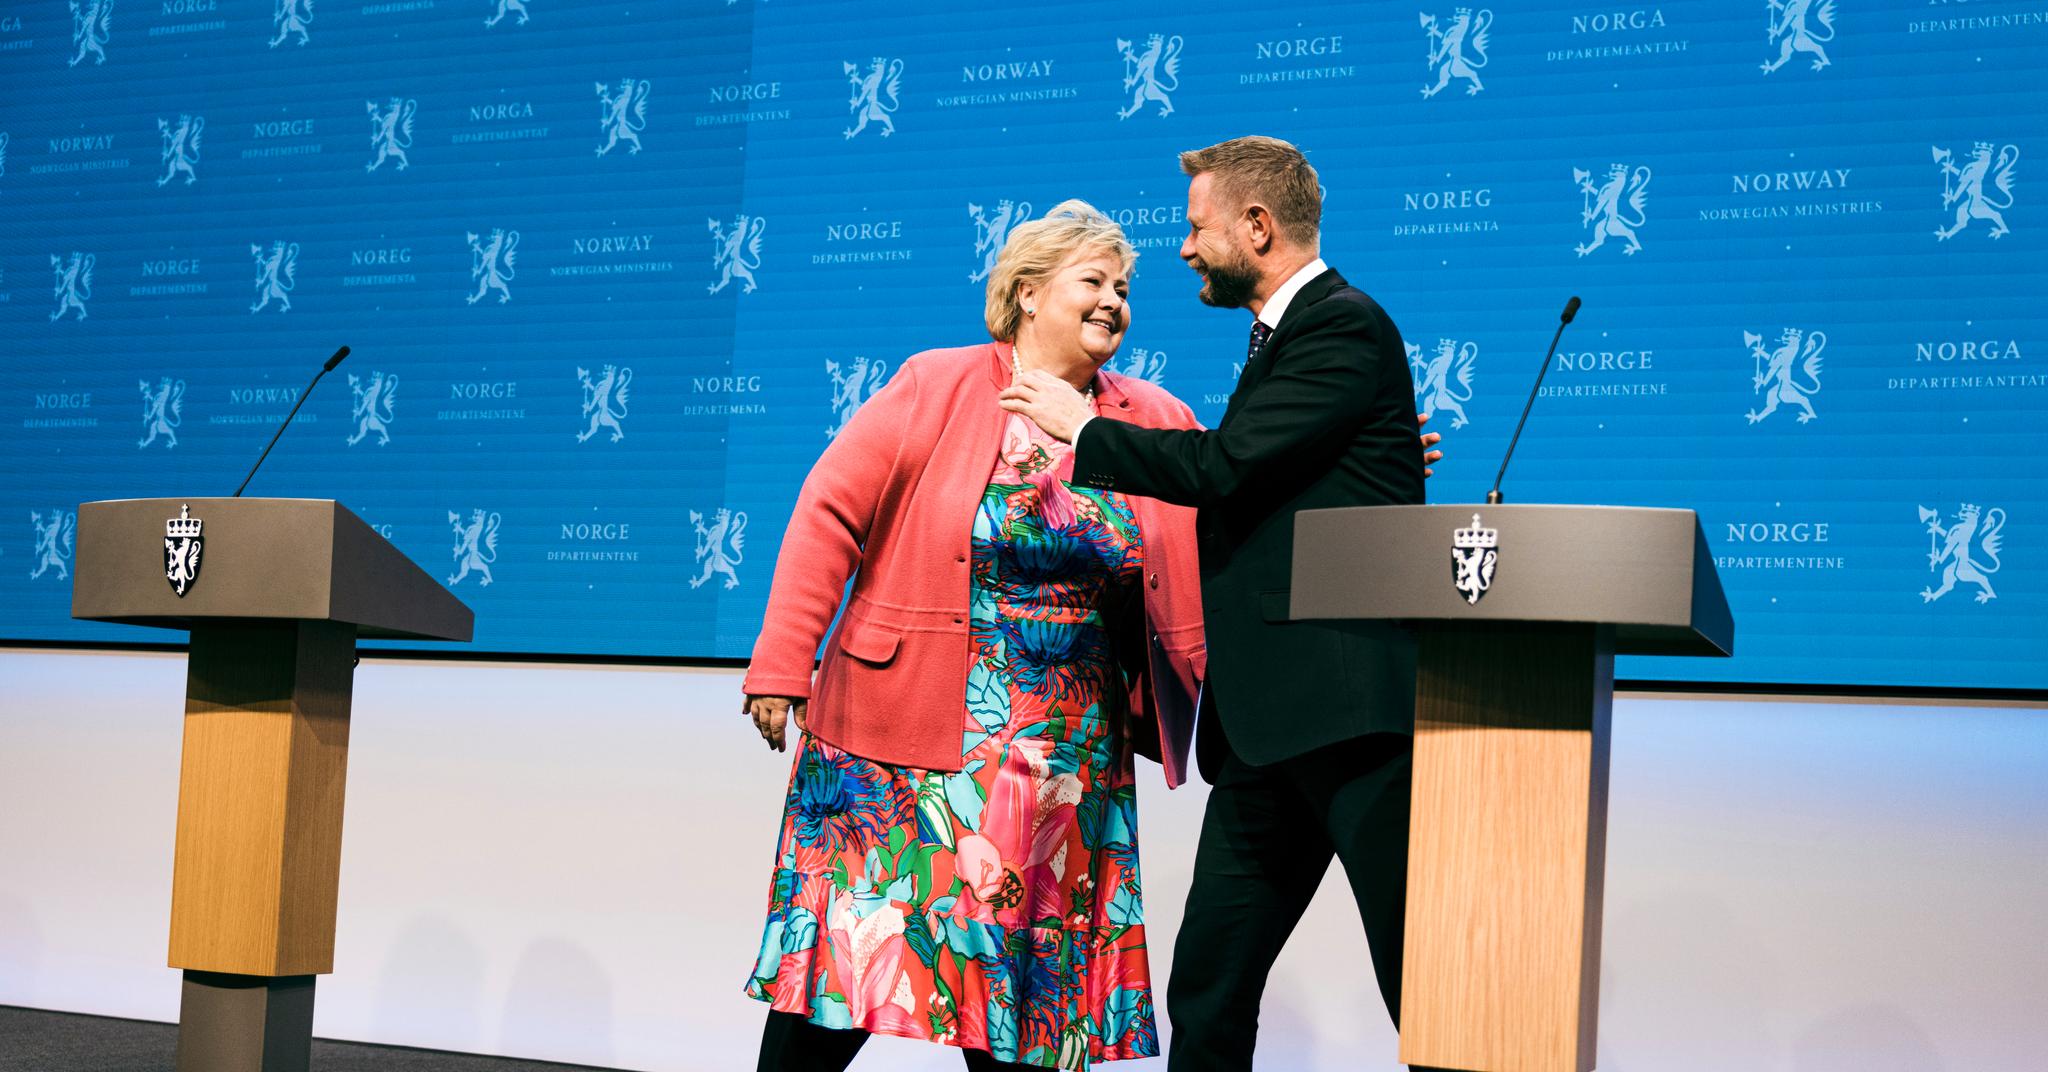 Lørdag 25. september blir en merkedag i pandemien. Statsminister Erna Solberg og helseminister Bent Høie ble bedt om å gi en symbolsk klem. 